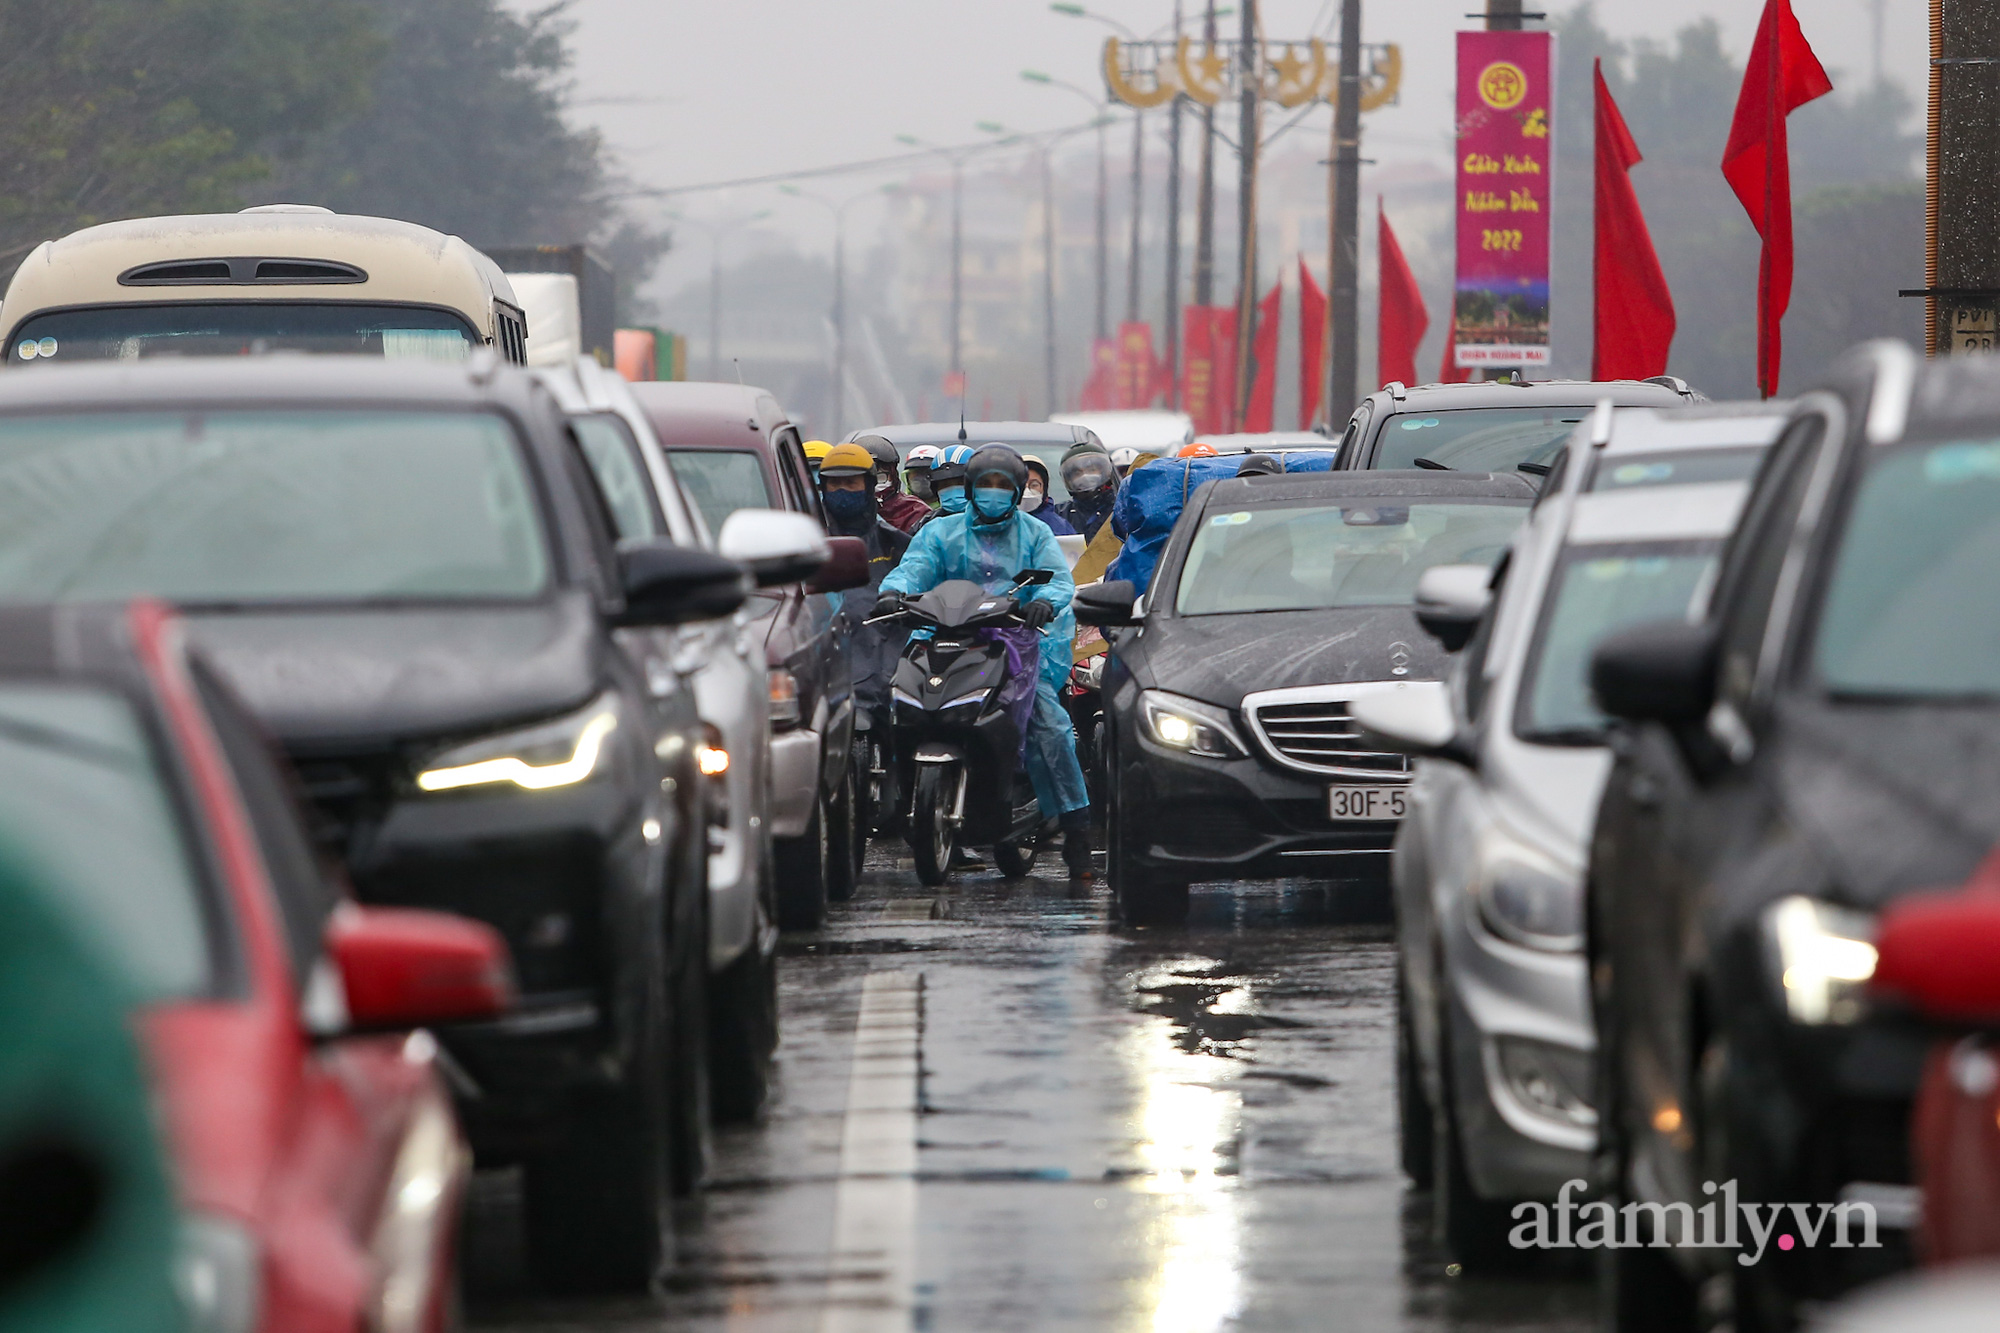 Người dân đội mưa rét trở lại Hà Nội sau kỳ nghỉ Tết, khu vực cửa ngõ ùn tắc-9